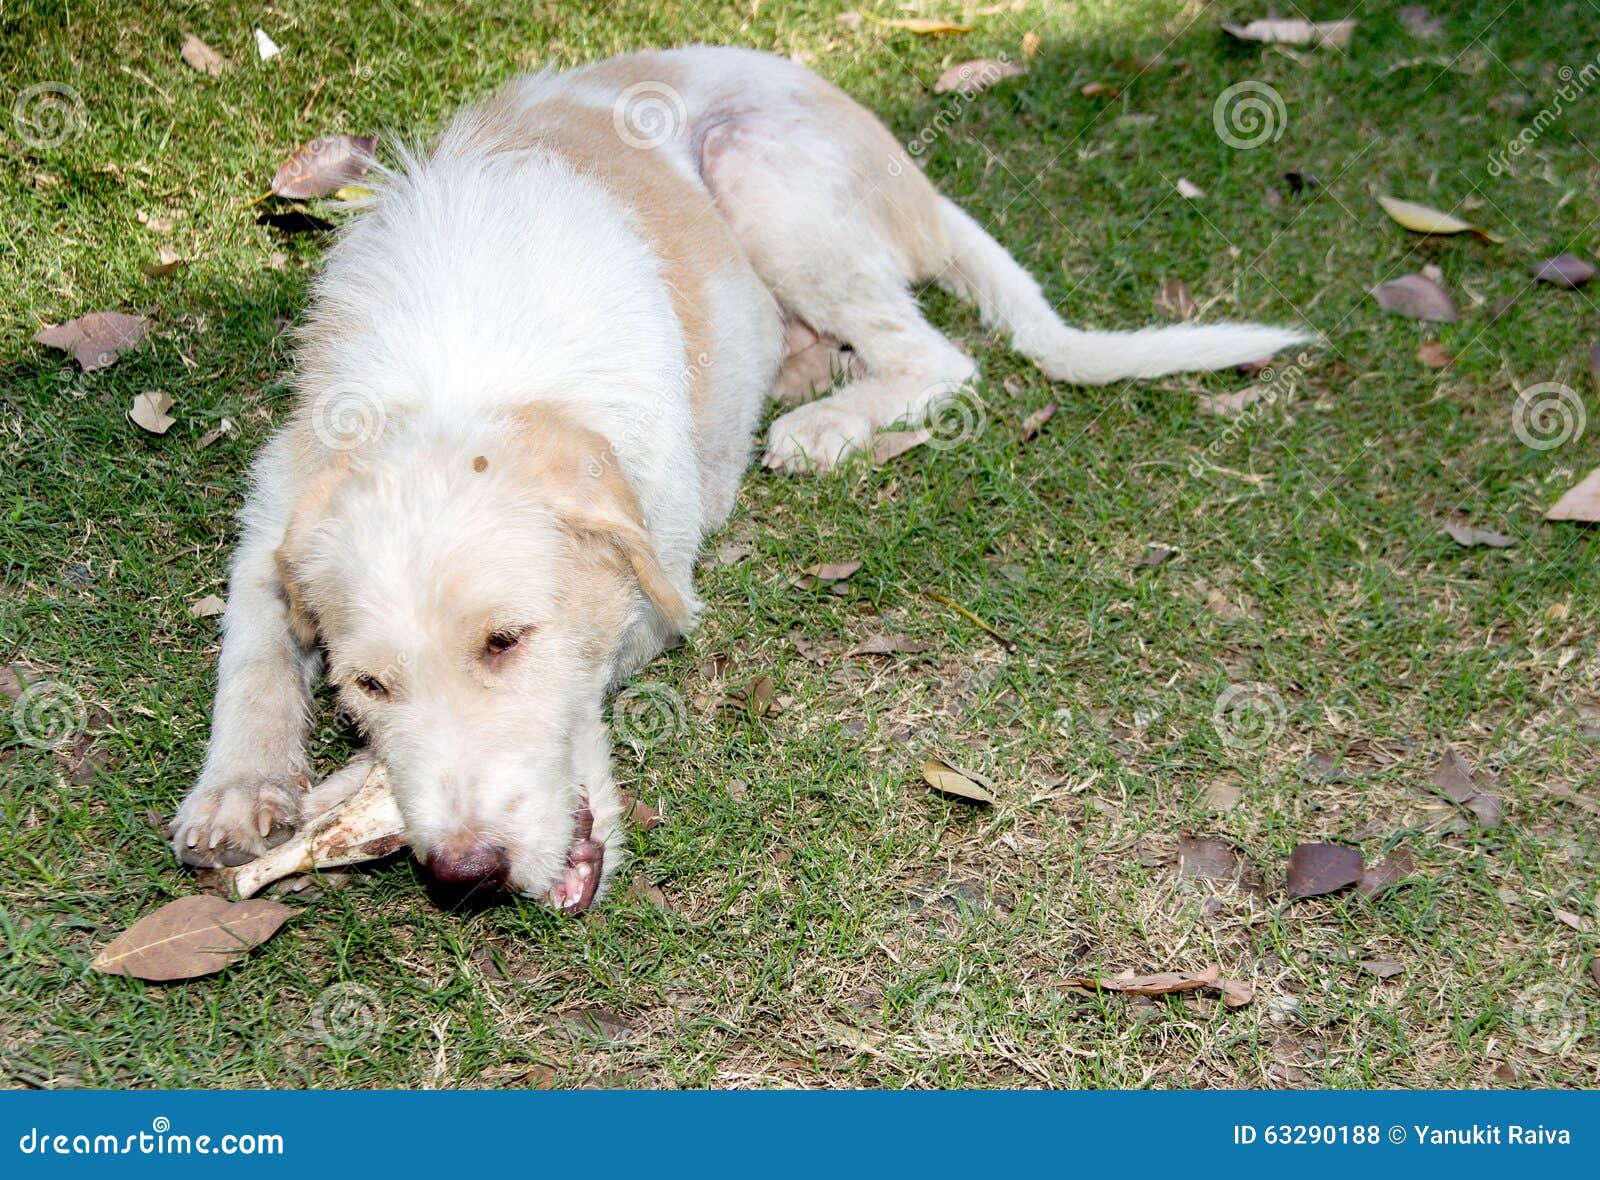 Stray dog eating pork bone stock photo. Image of alone - 63290188